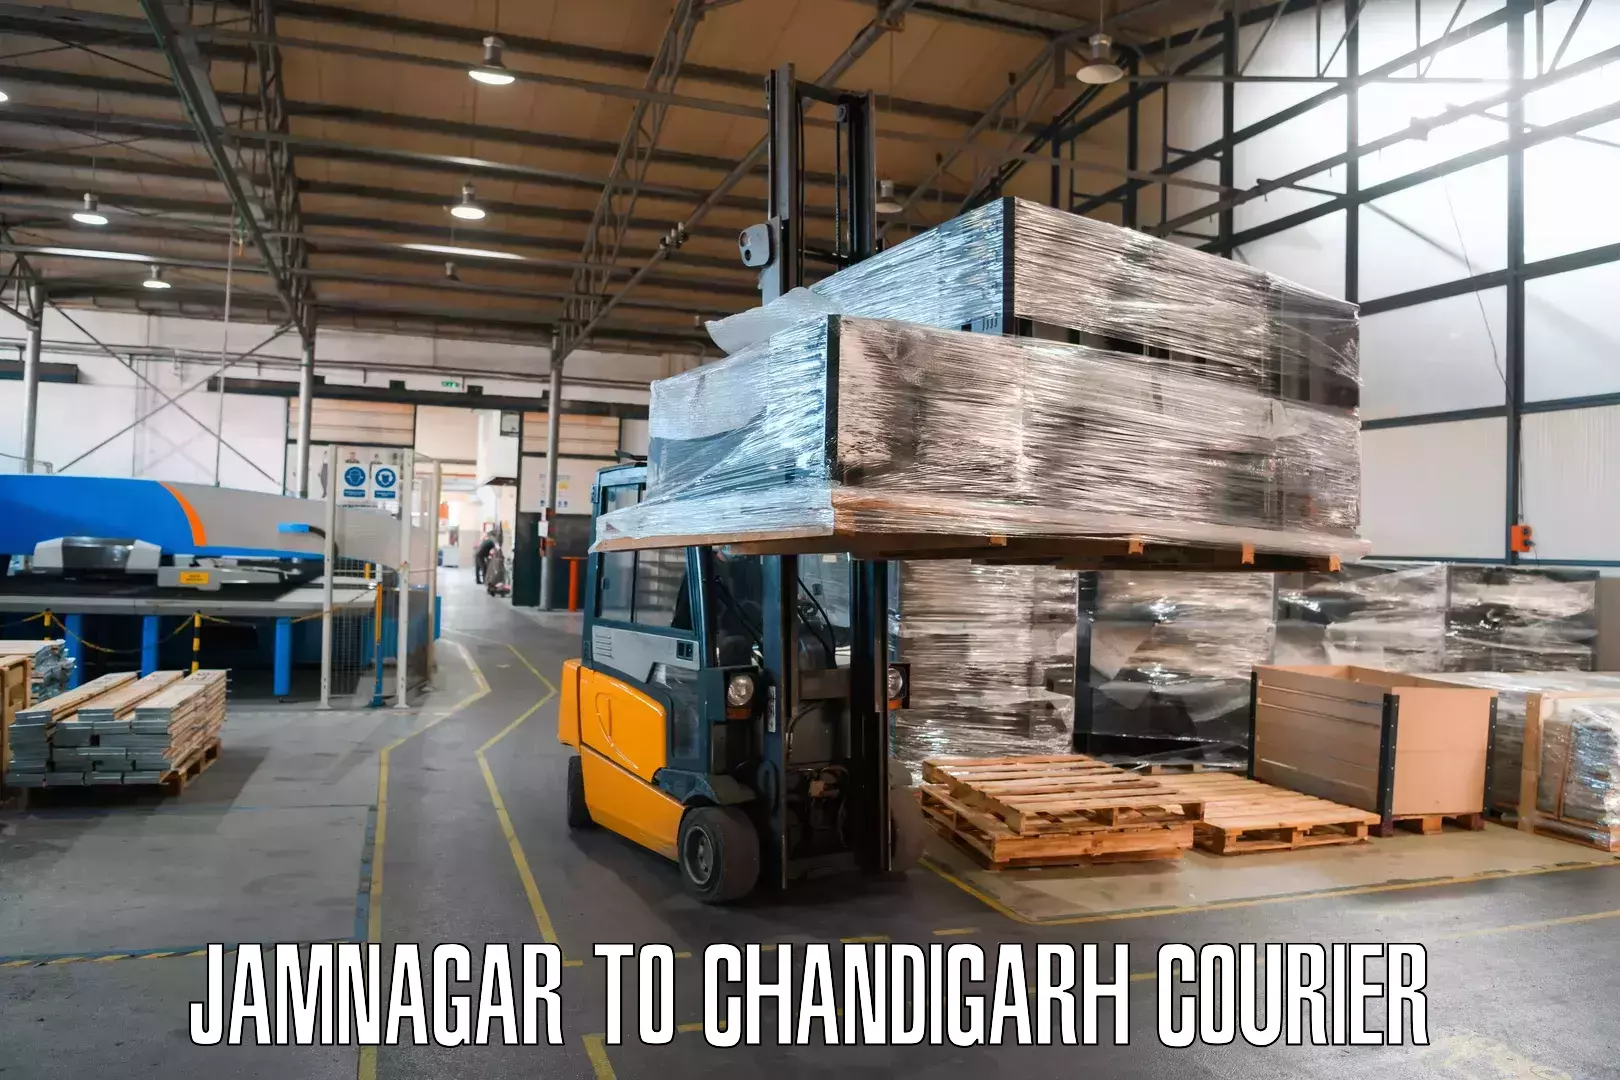 User-friendly courier app Jamnagar to Chandigarh